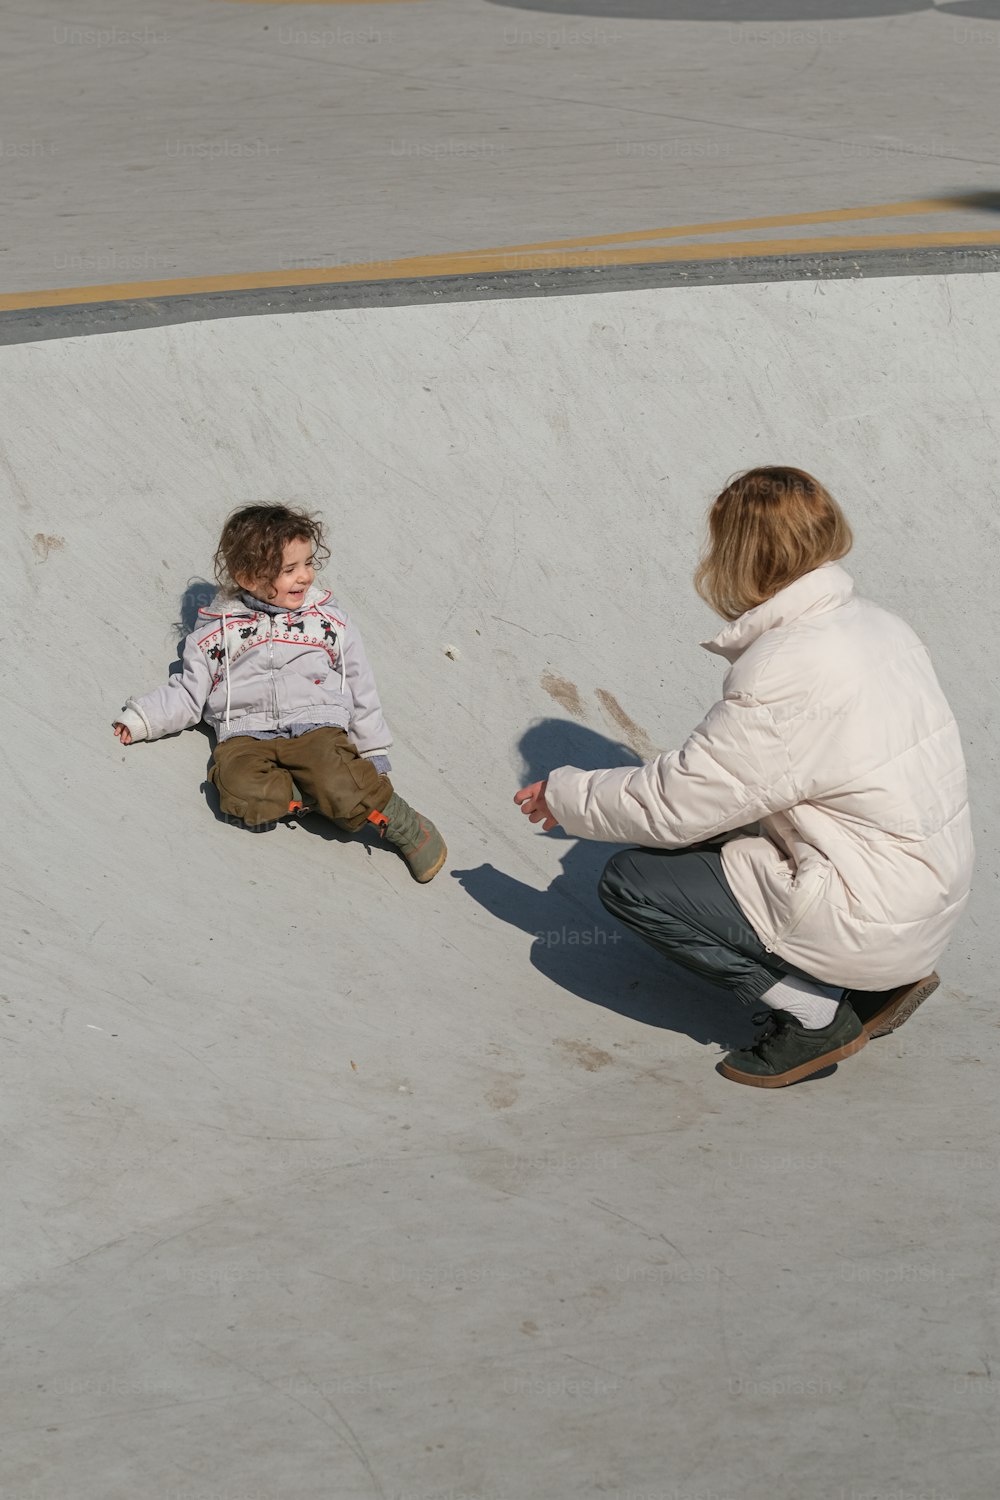 uma mulher ajoelhada ao lado de uma criança em um skate